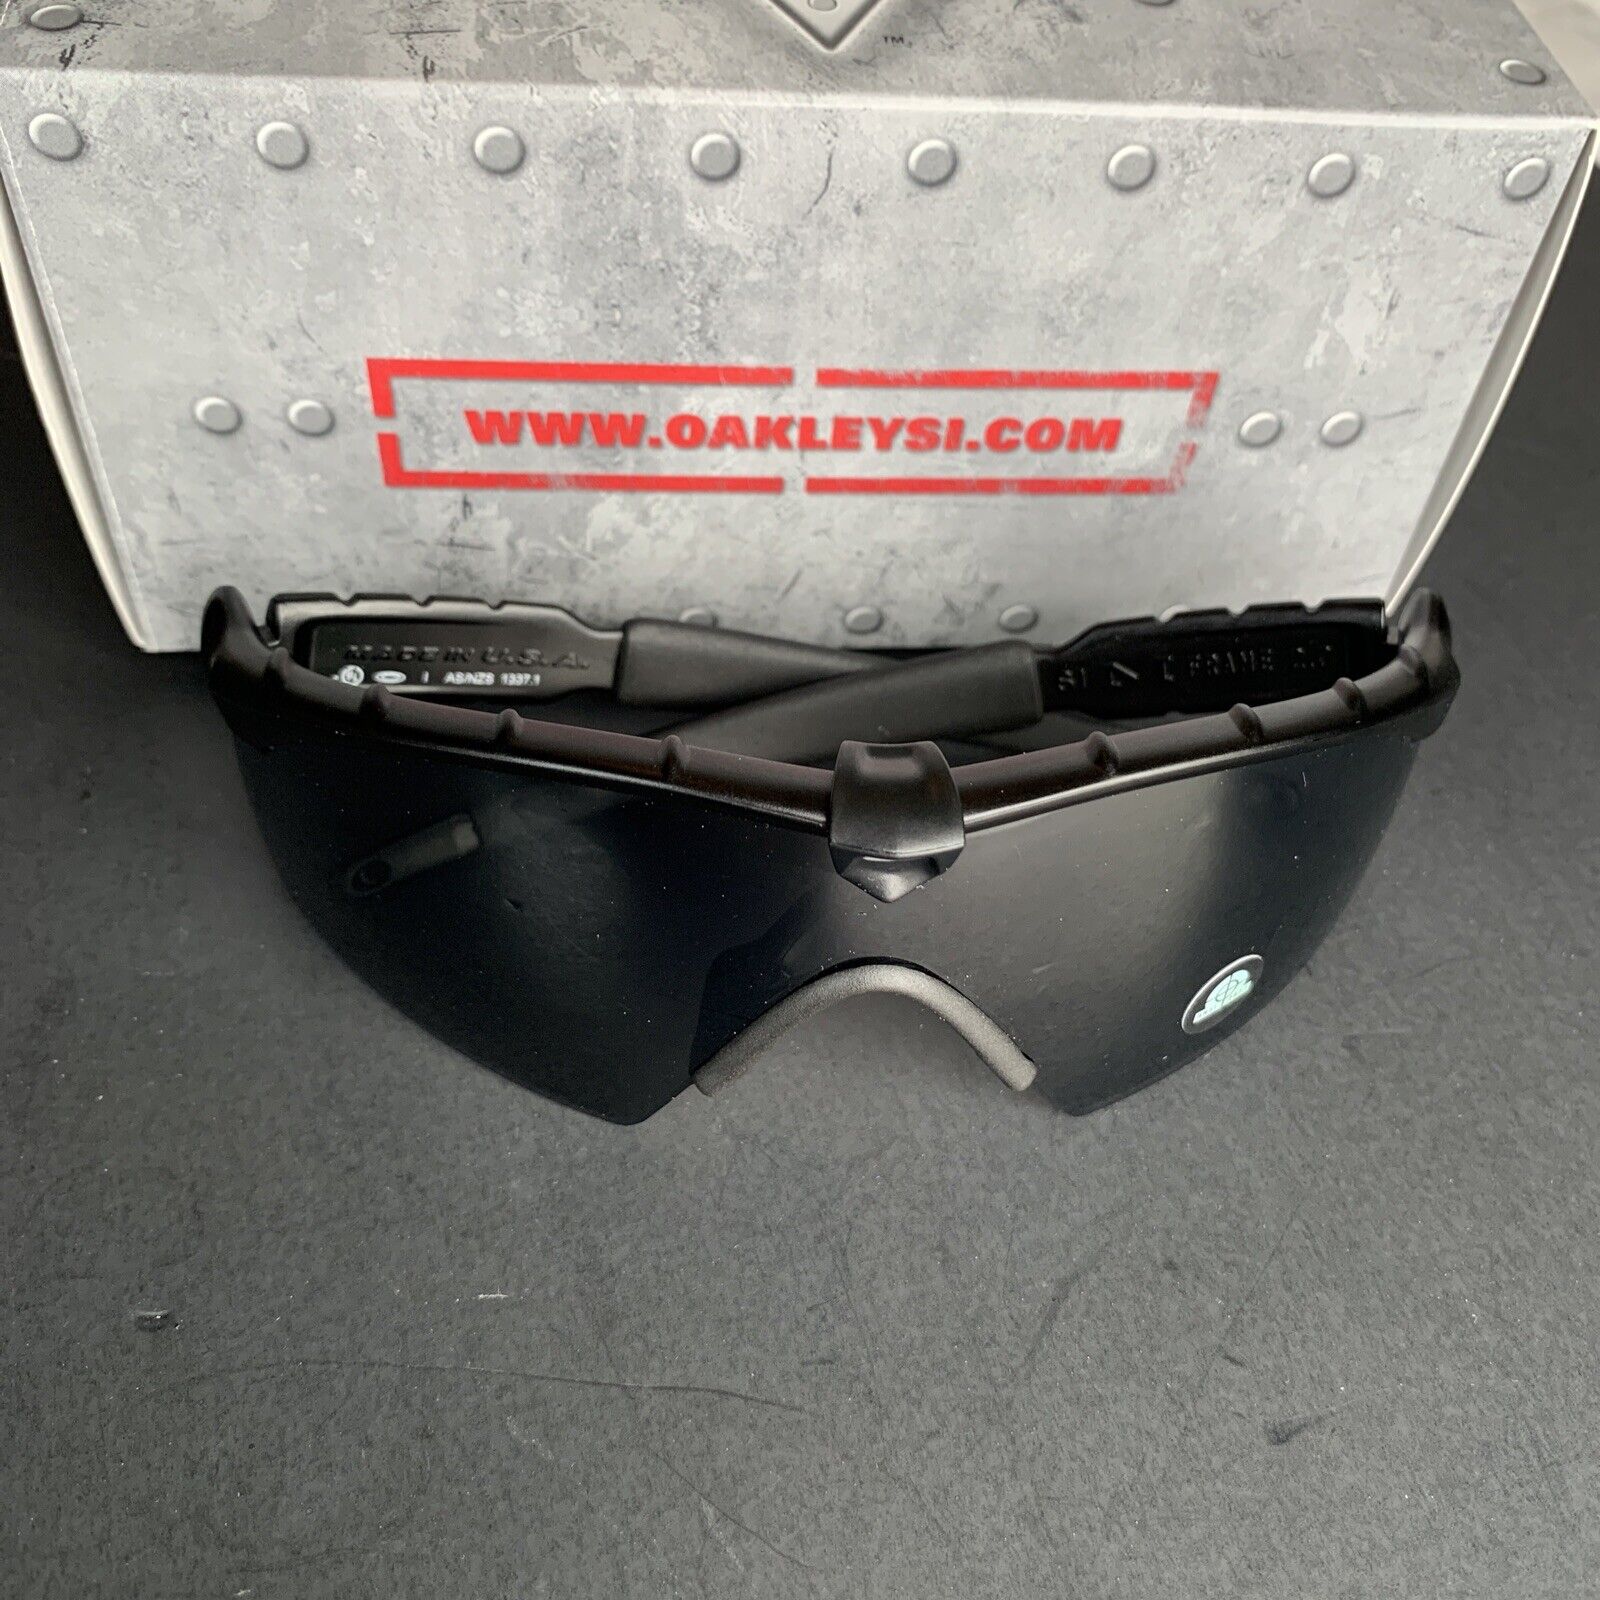 New Oakley M FRAME 2.0 Sunglasses | 9213-03 Matte Black /ANSI Z87.1 Grey Lens